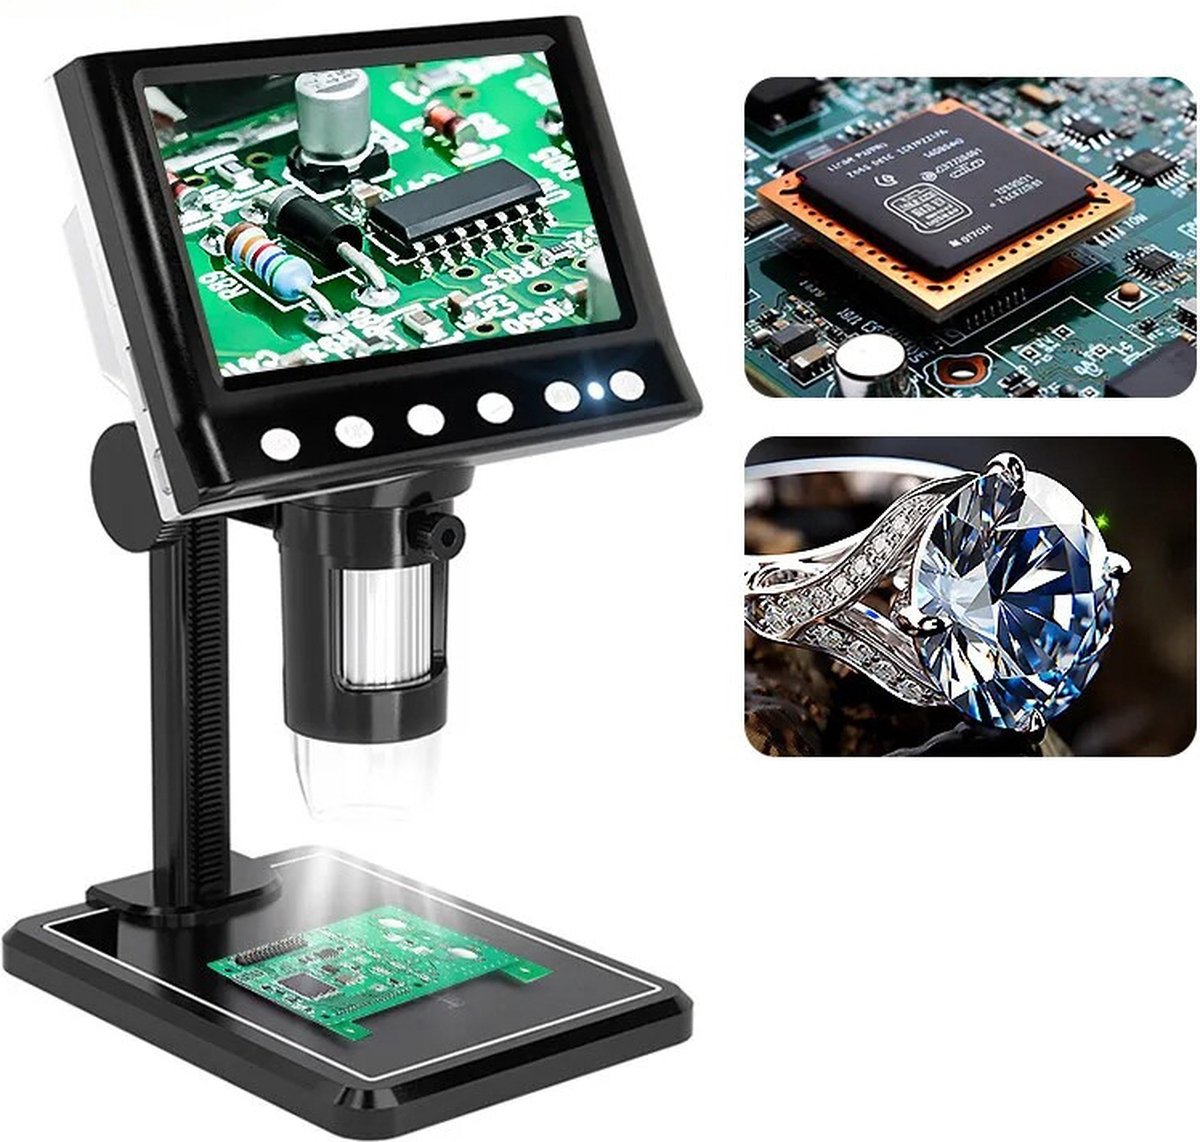 Kinder microscoop - Junior microscoop - Microscoop - Microscope - Kinderen - Junior - 1600X Vergroting - Met digitaal scherm